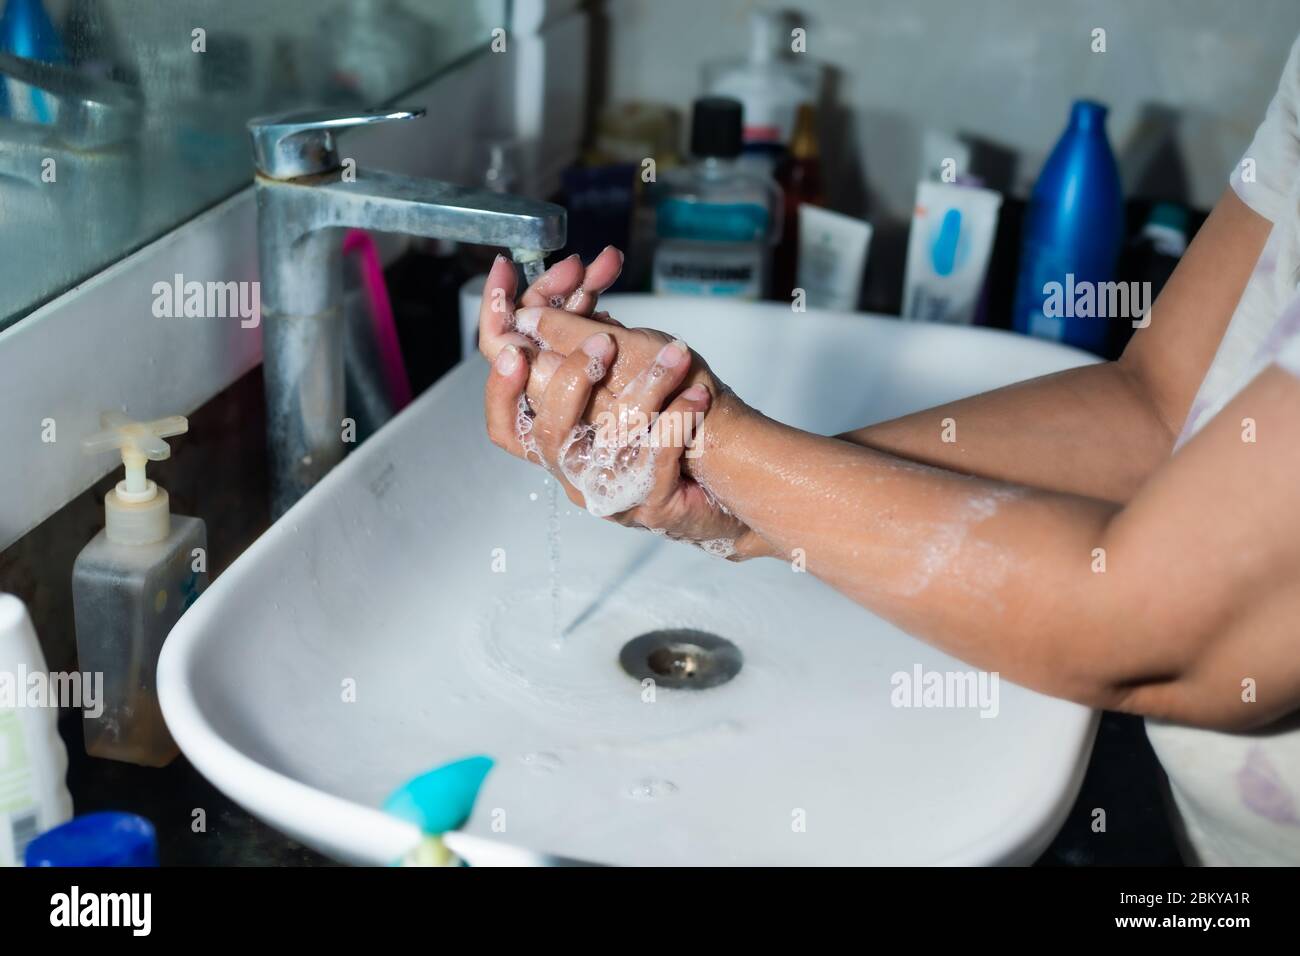 Erwachsene waschen Hände und Arme richtig mit Alkohol Seife unter dem Waschbecken/Waschbecken im Waschraum, um Coronavirus zu bekämpfen. Stockfoto